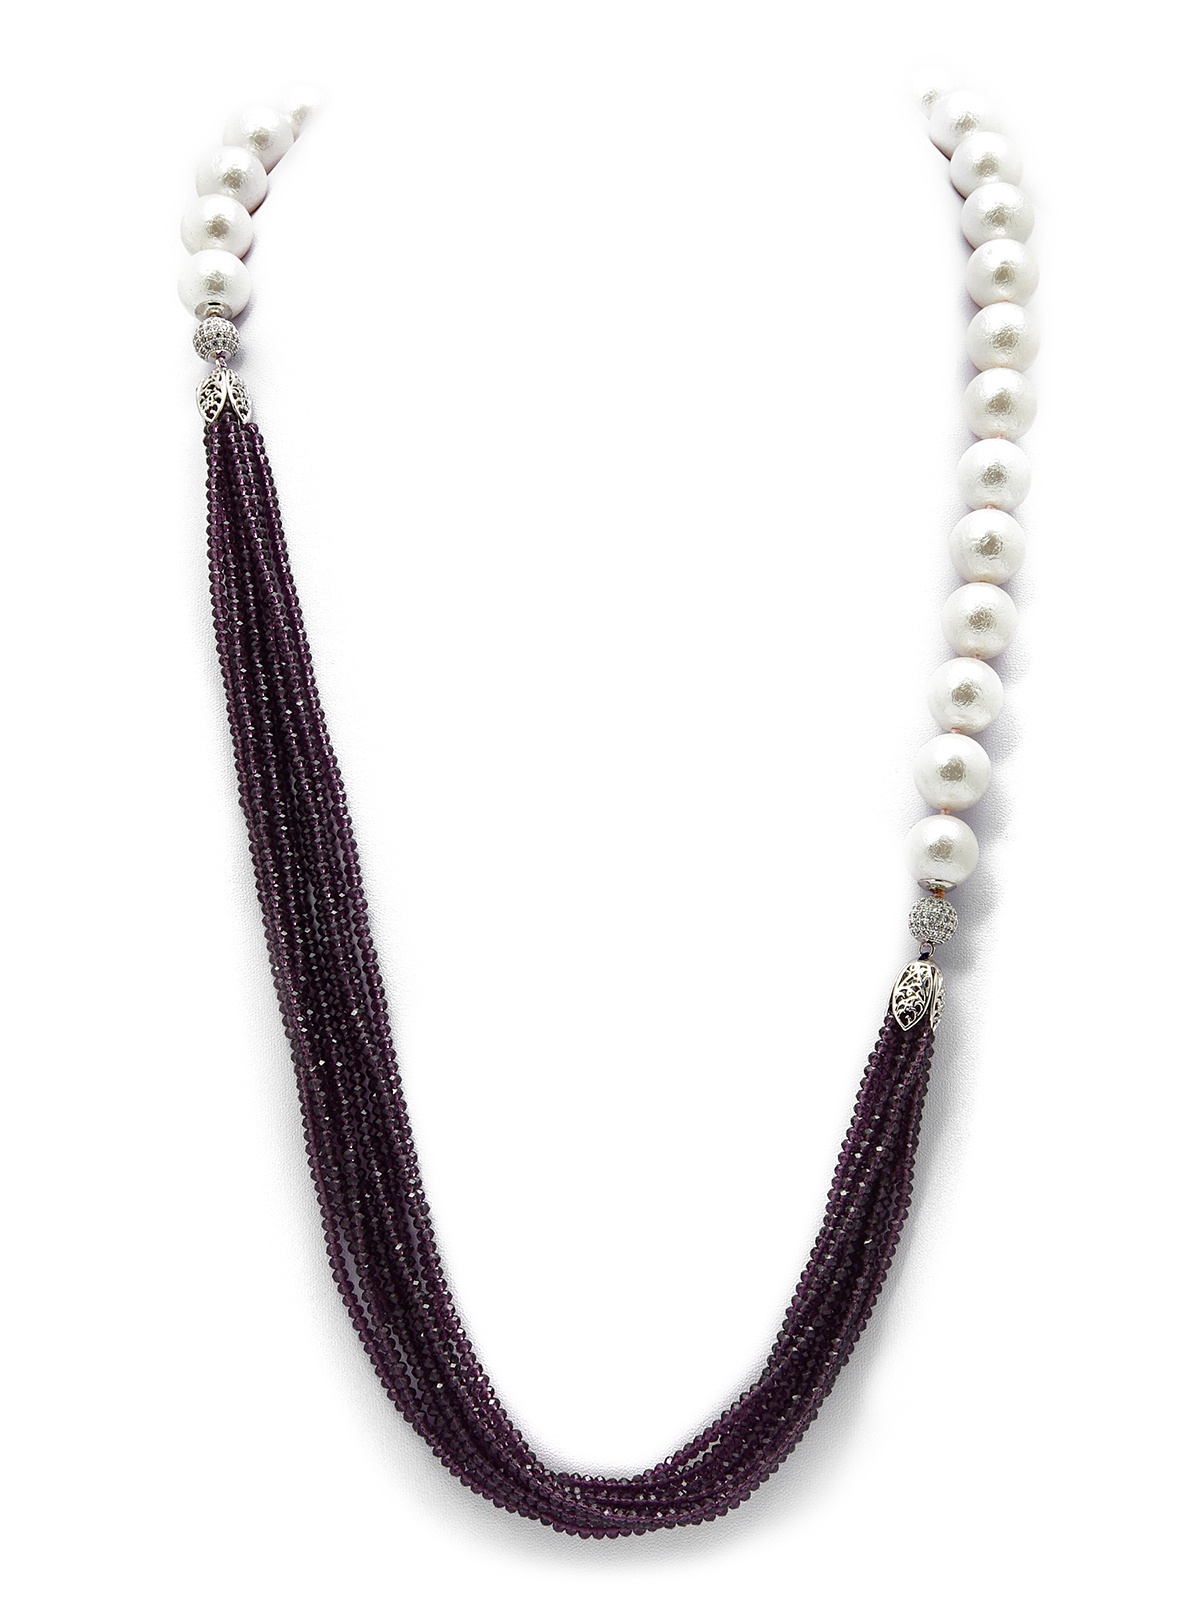 фото Колье/ожерелье бижутерное ЖемАрт с541-062, Искусственный жемчуг, Кварц, Бижутерный сплав, 85 см, белый, фиолетовый, серебристый